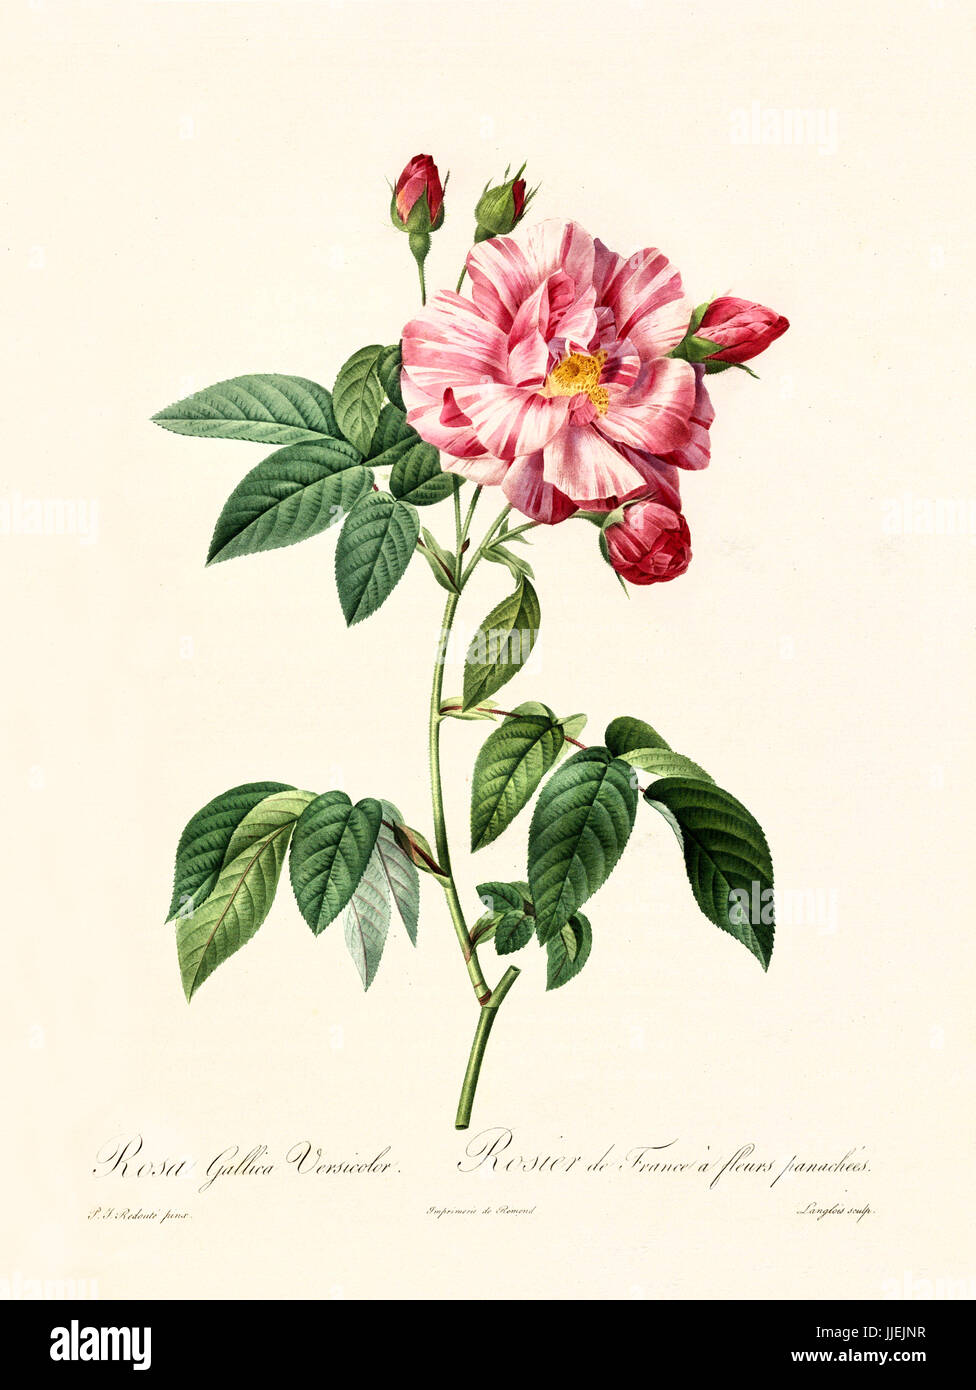 Vecchia illustrazione di rosa gallica versicolor. Creato da P. R. Redoute, pubblicato su Les Roses, Imp. Firmin Didot, Parigi, 1817-24 Foto Stock